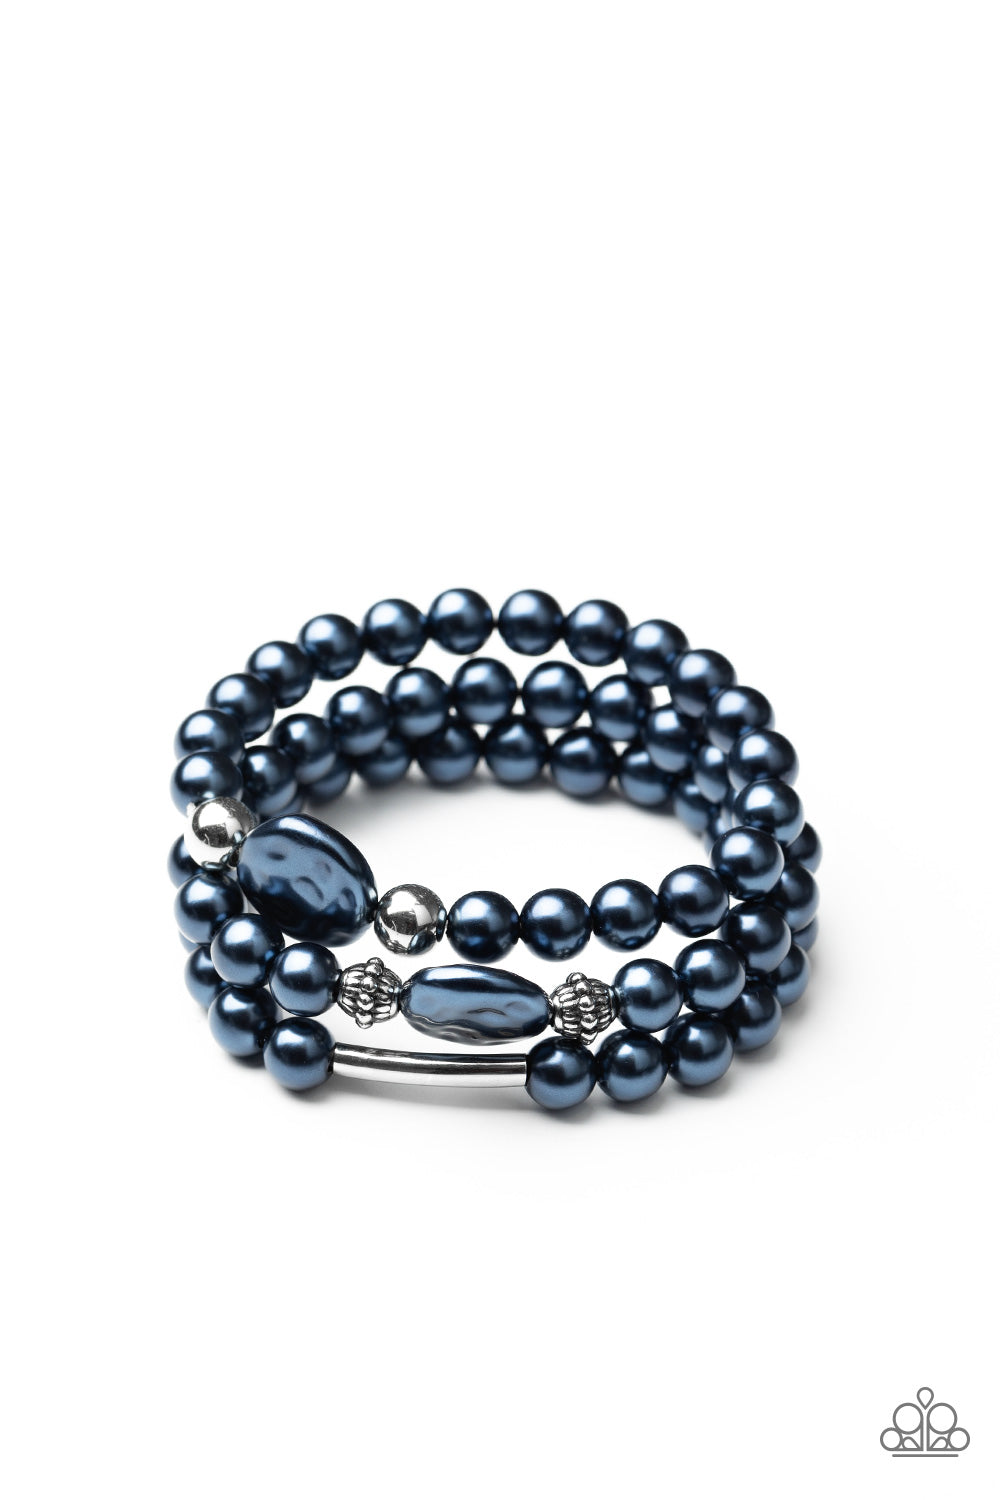 Exquisitely Elegant - Blue Bracelet freeshipping - JewLz4u Gemstone Gallery